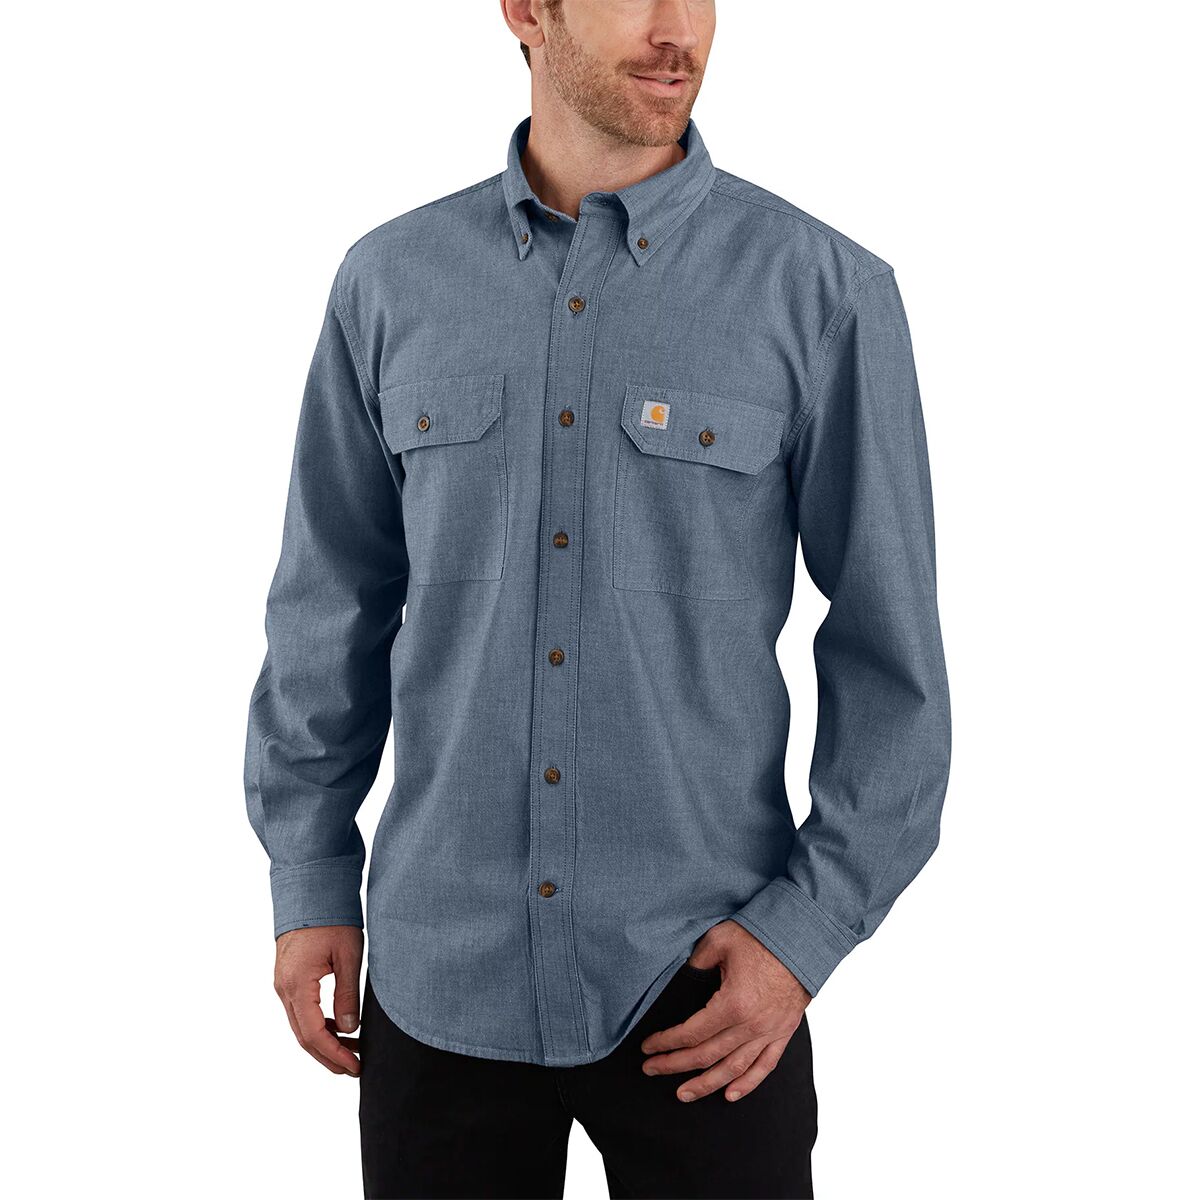 Carhartt TW368 Original Fit Long-Sleeve Shirt - Men's